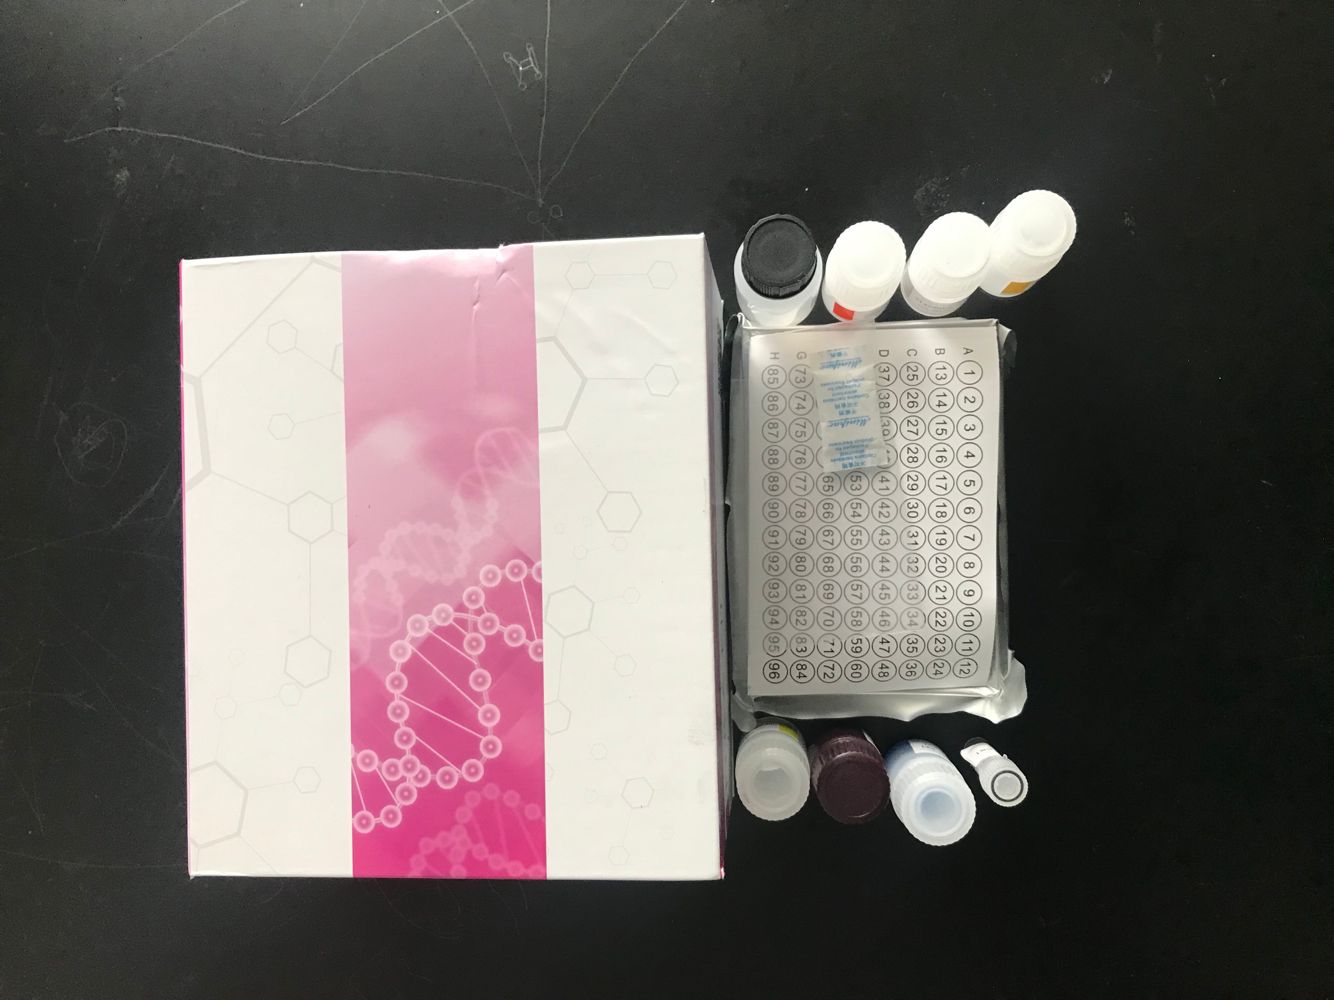 唾液酸苷酶检测试剂盒进口试剂